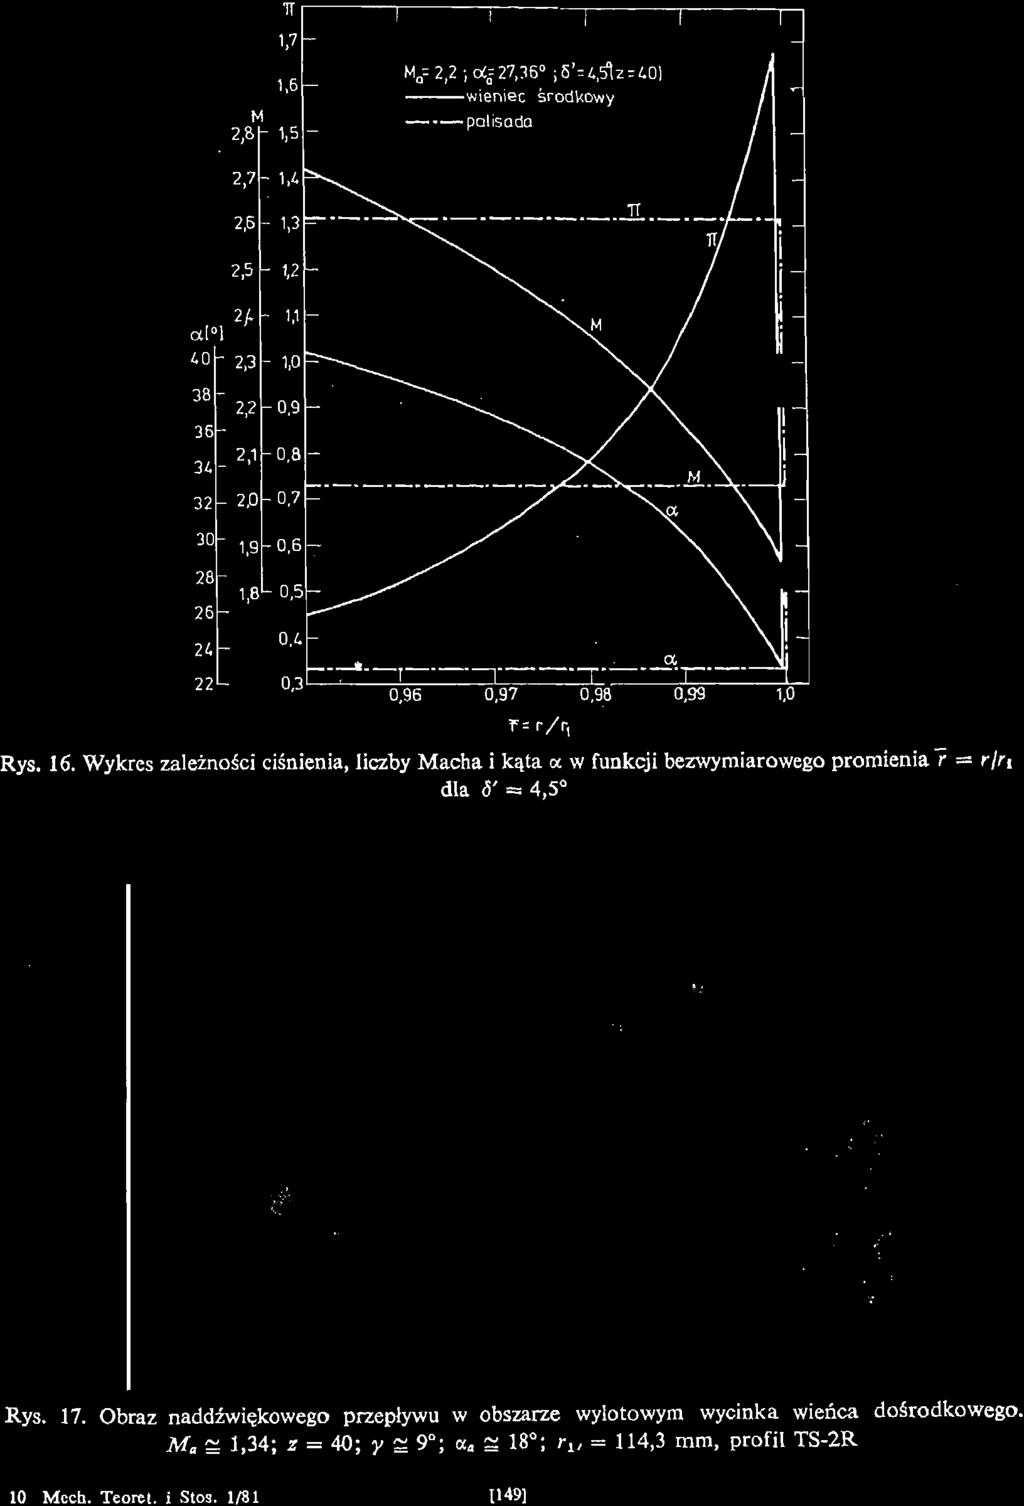 Wykres zależności ciśnienia, liczby Macha i kąta <x w funkcji bezwymiarowego promienia 7 = r/n dla 6'